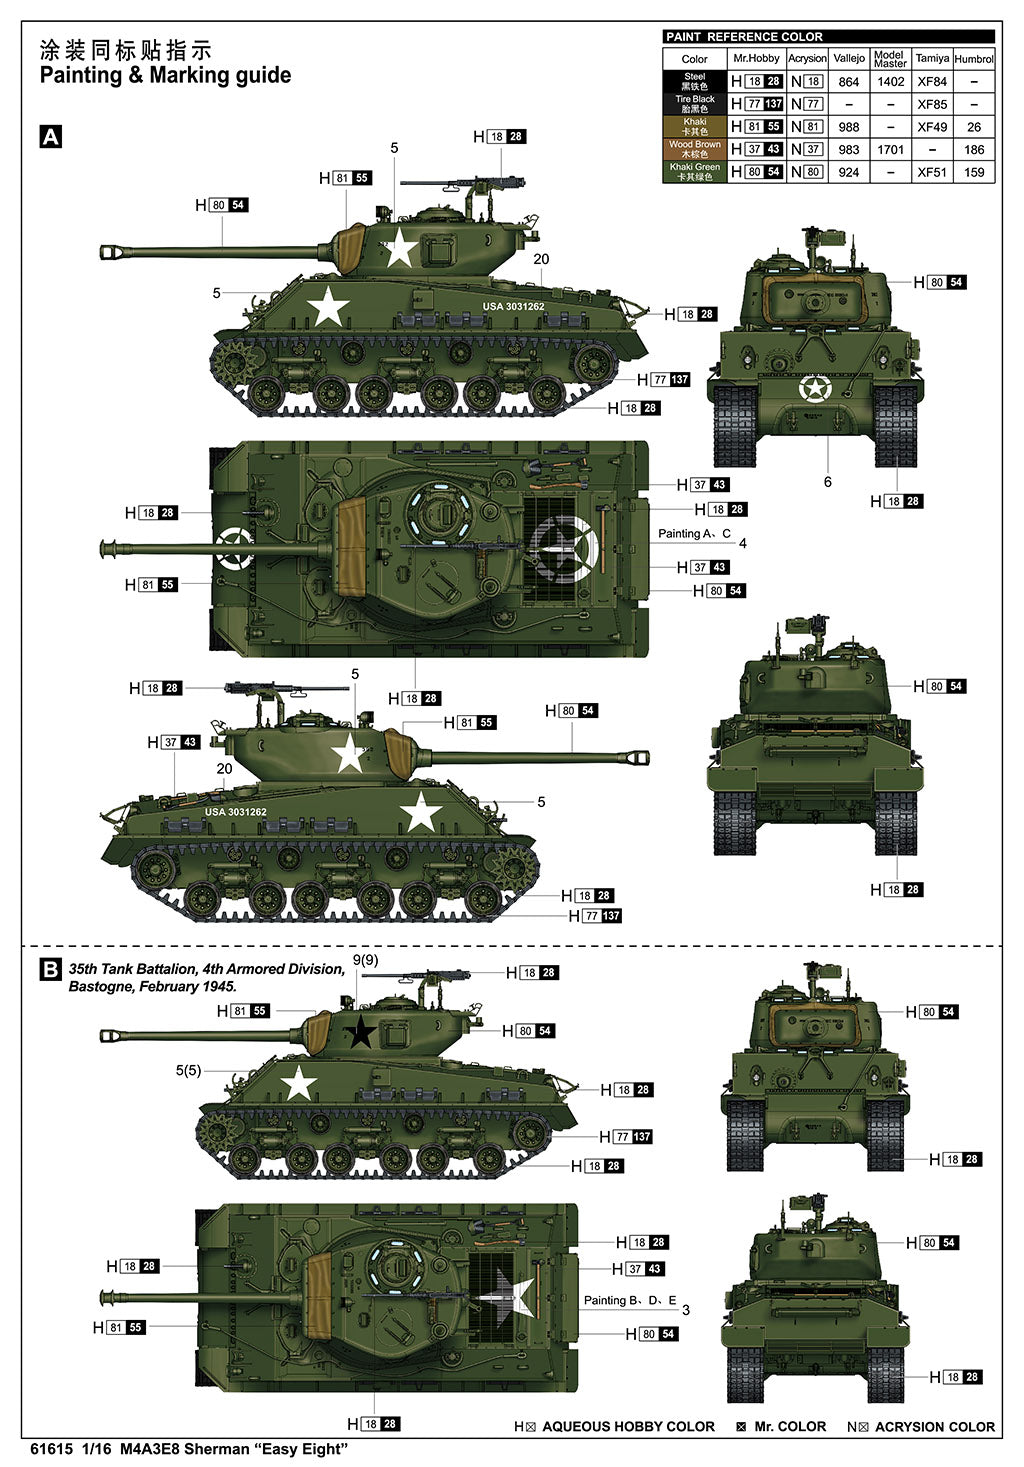 Lego militaire - Easy Eight - M4A3E8(76)W Sherman Tank Kit